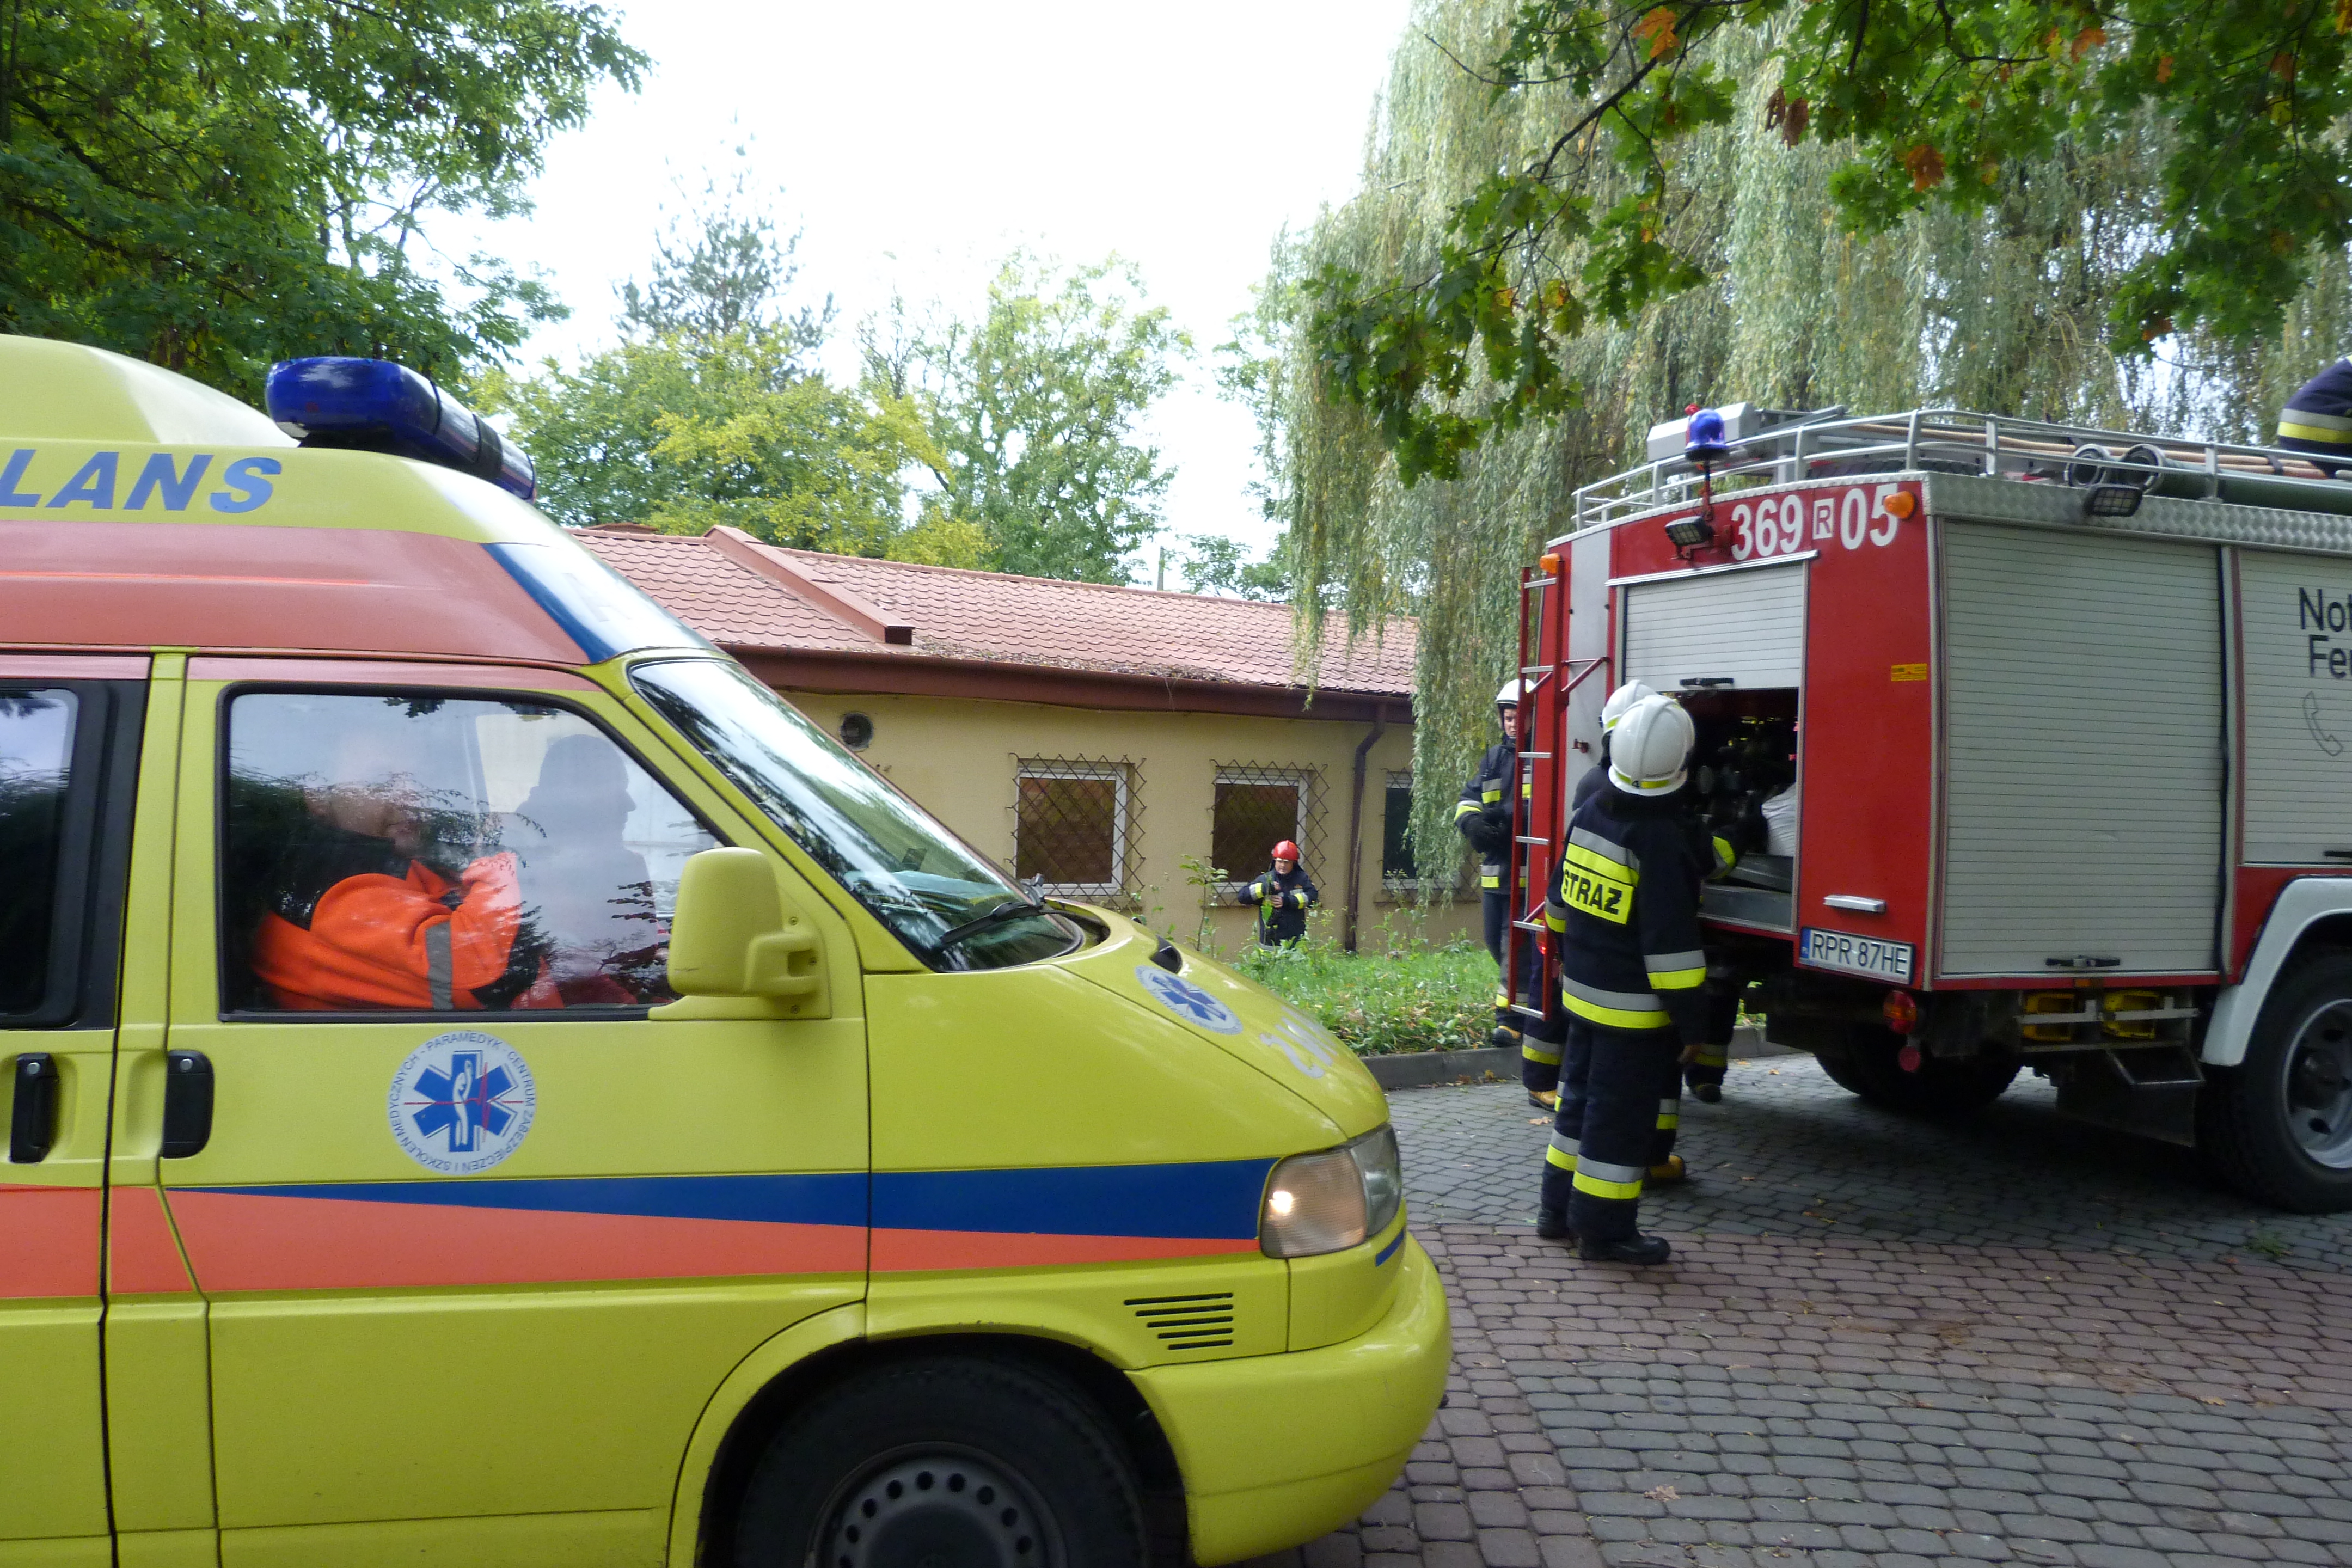 Ćwiczenia zgrywające Ochotniczych Straży Pożarnych - pojazd ambulansu oraz wóz strażacki